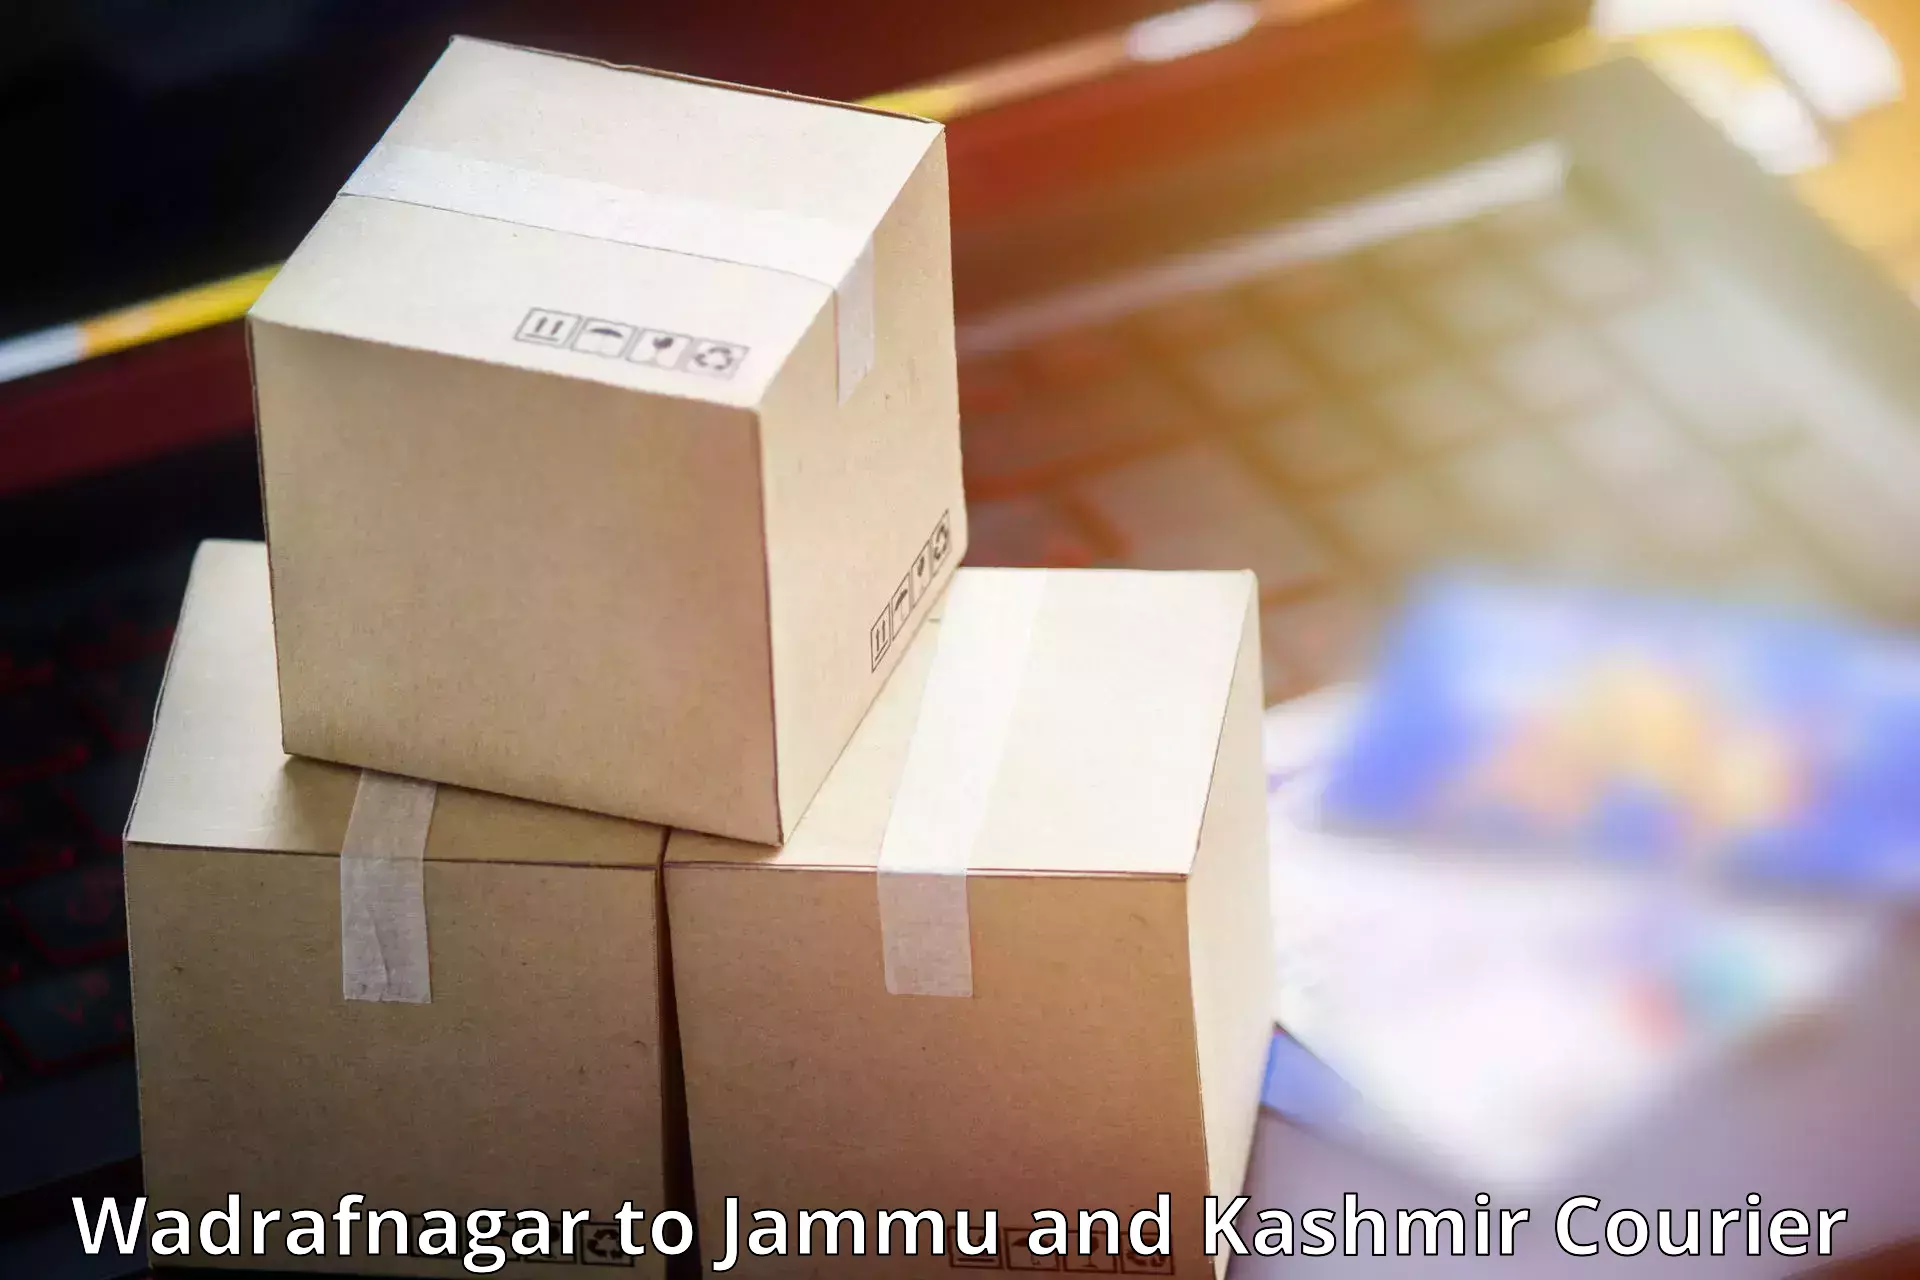 Bulk shipment Wadrafnagar to Ramban